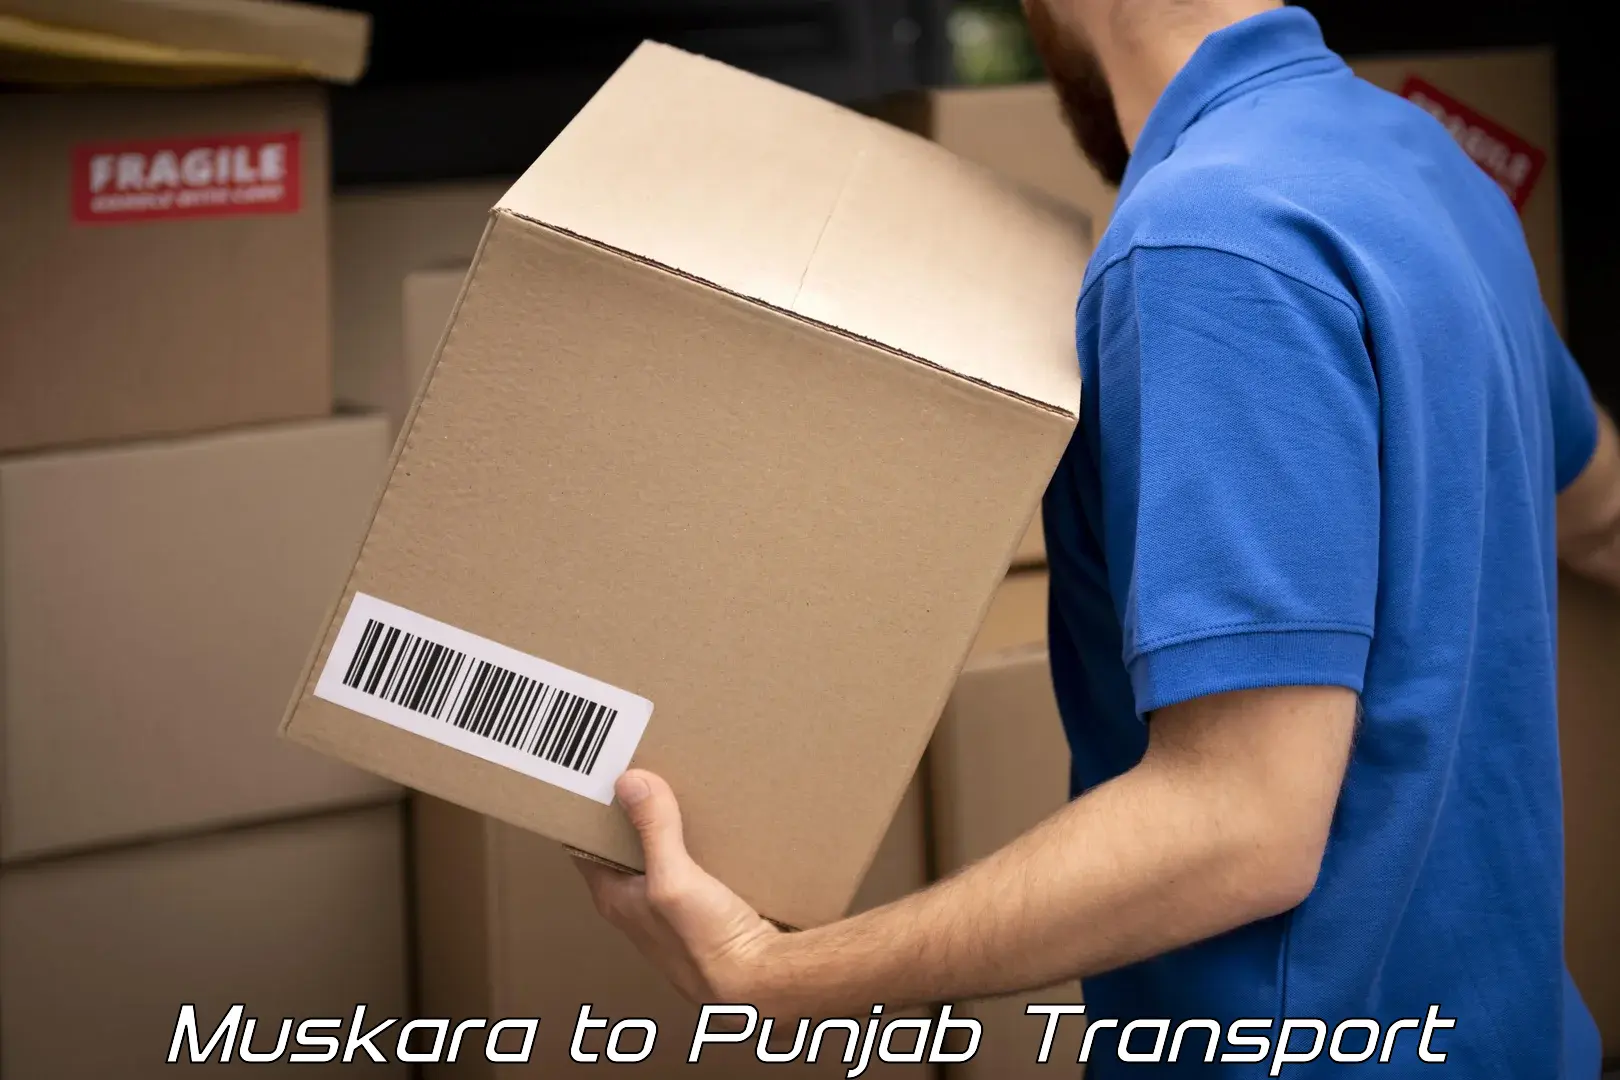 Commercial transport service Muskara to Phillaur